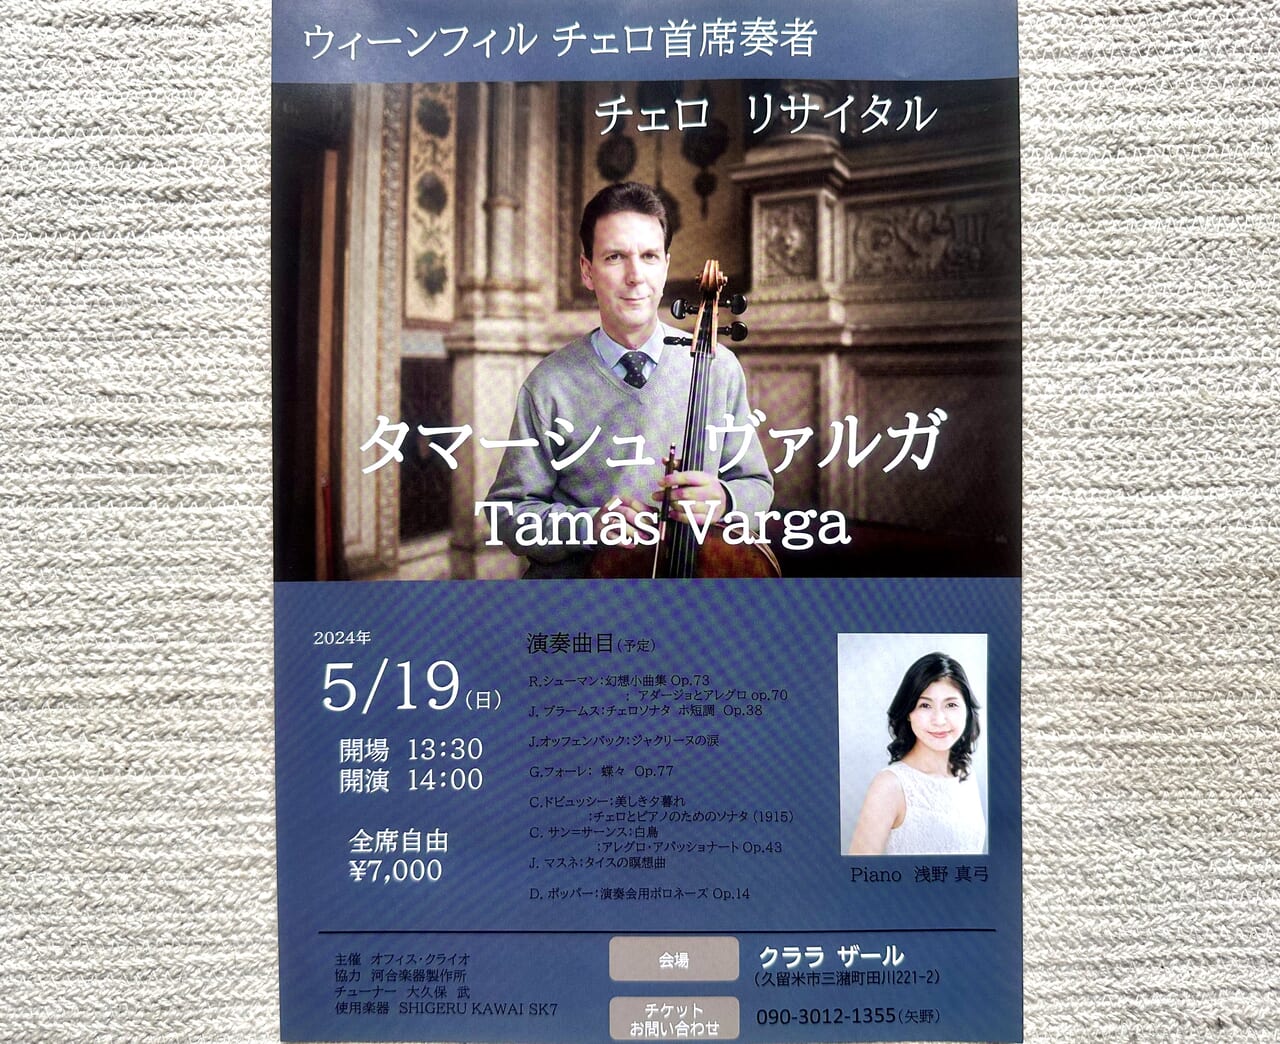 2024年ウィーンフィル チェロ主席奏者「Tamás Varga(タマーシュ ヴァルガ)チェロリサイタル」